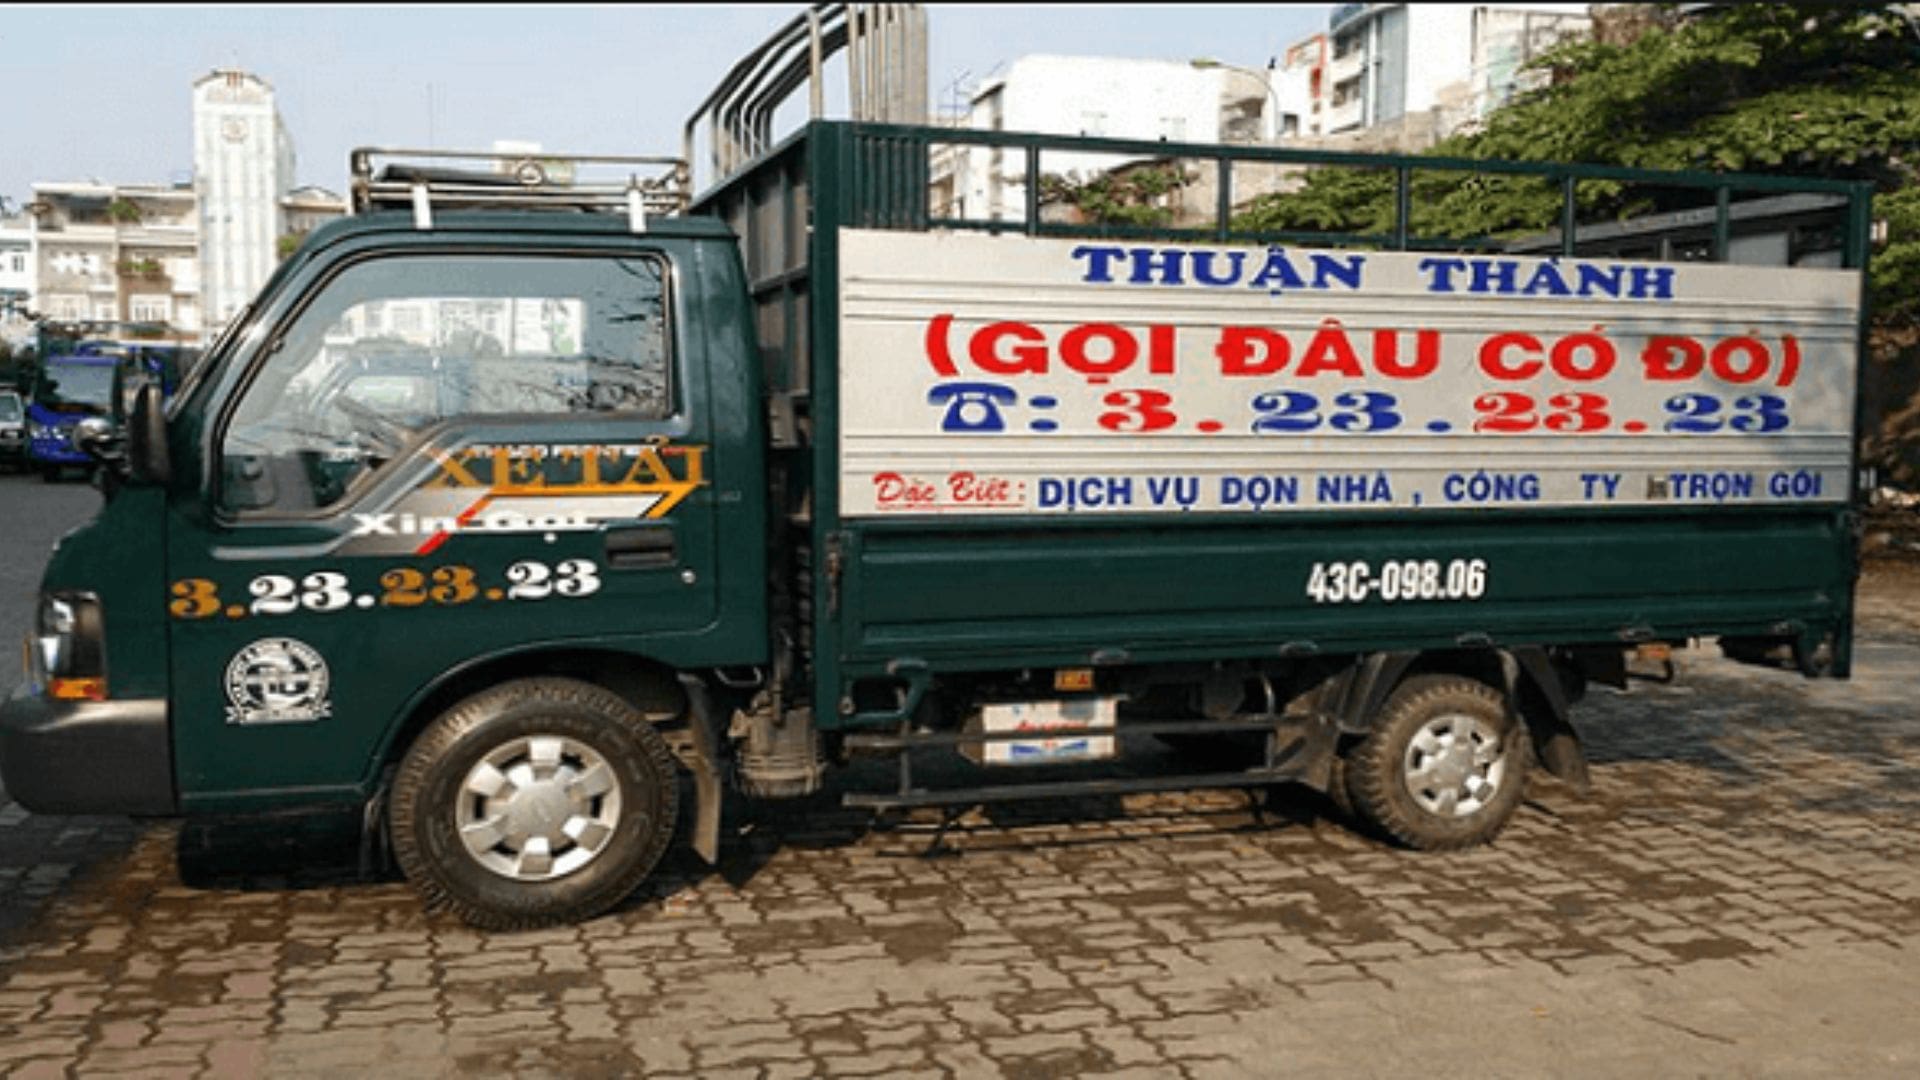 Taxi tải Thuận Thành - Công ty vận chuyển trọ Đà Nẵng giá tốt